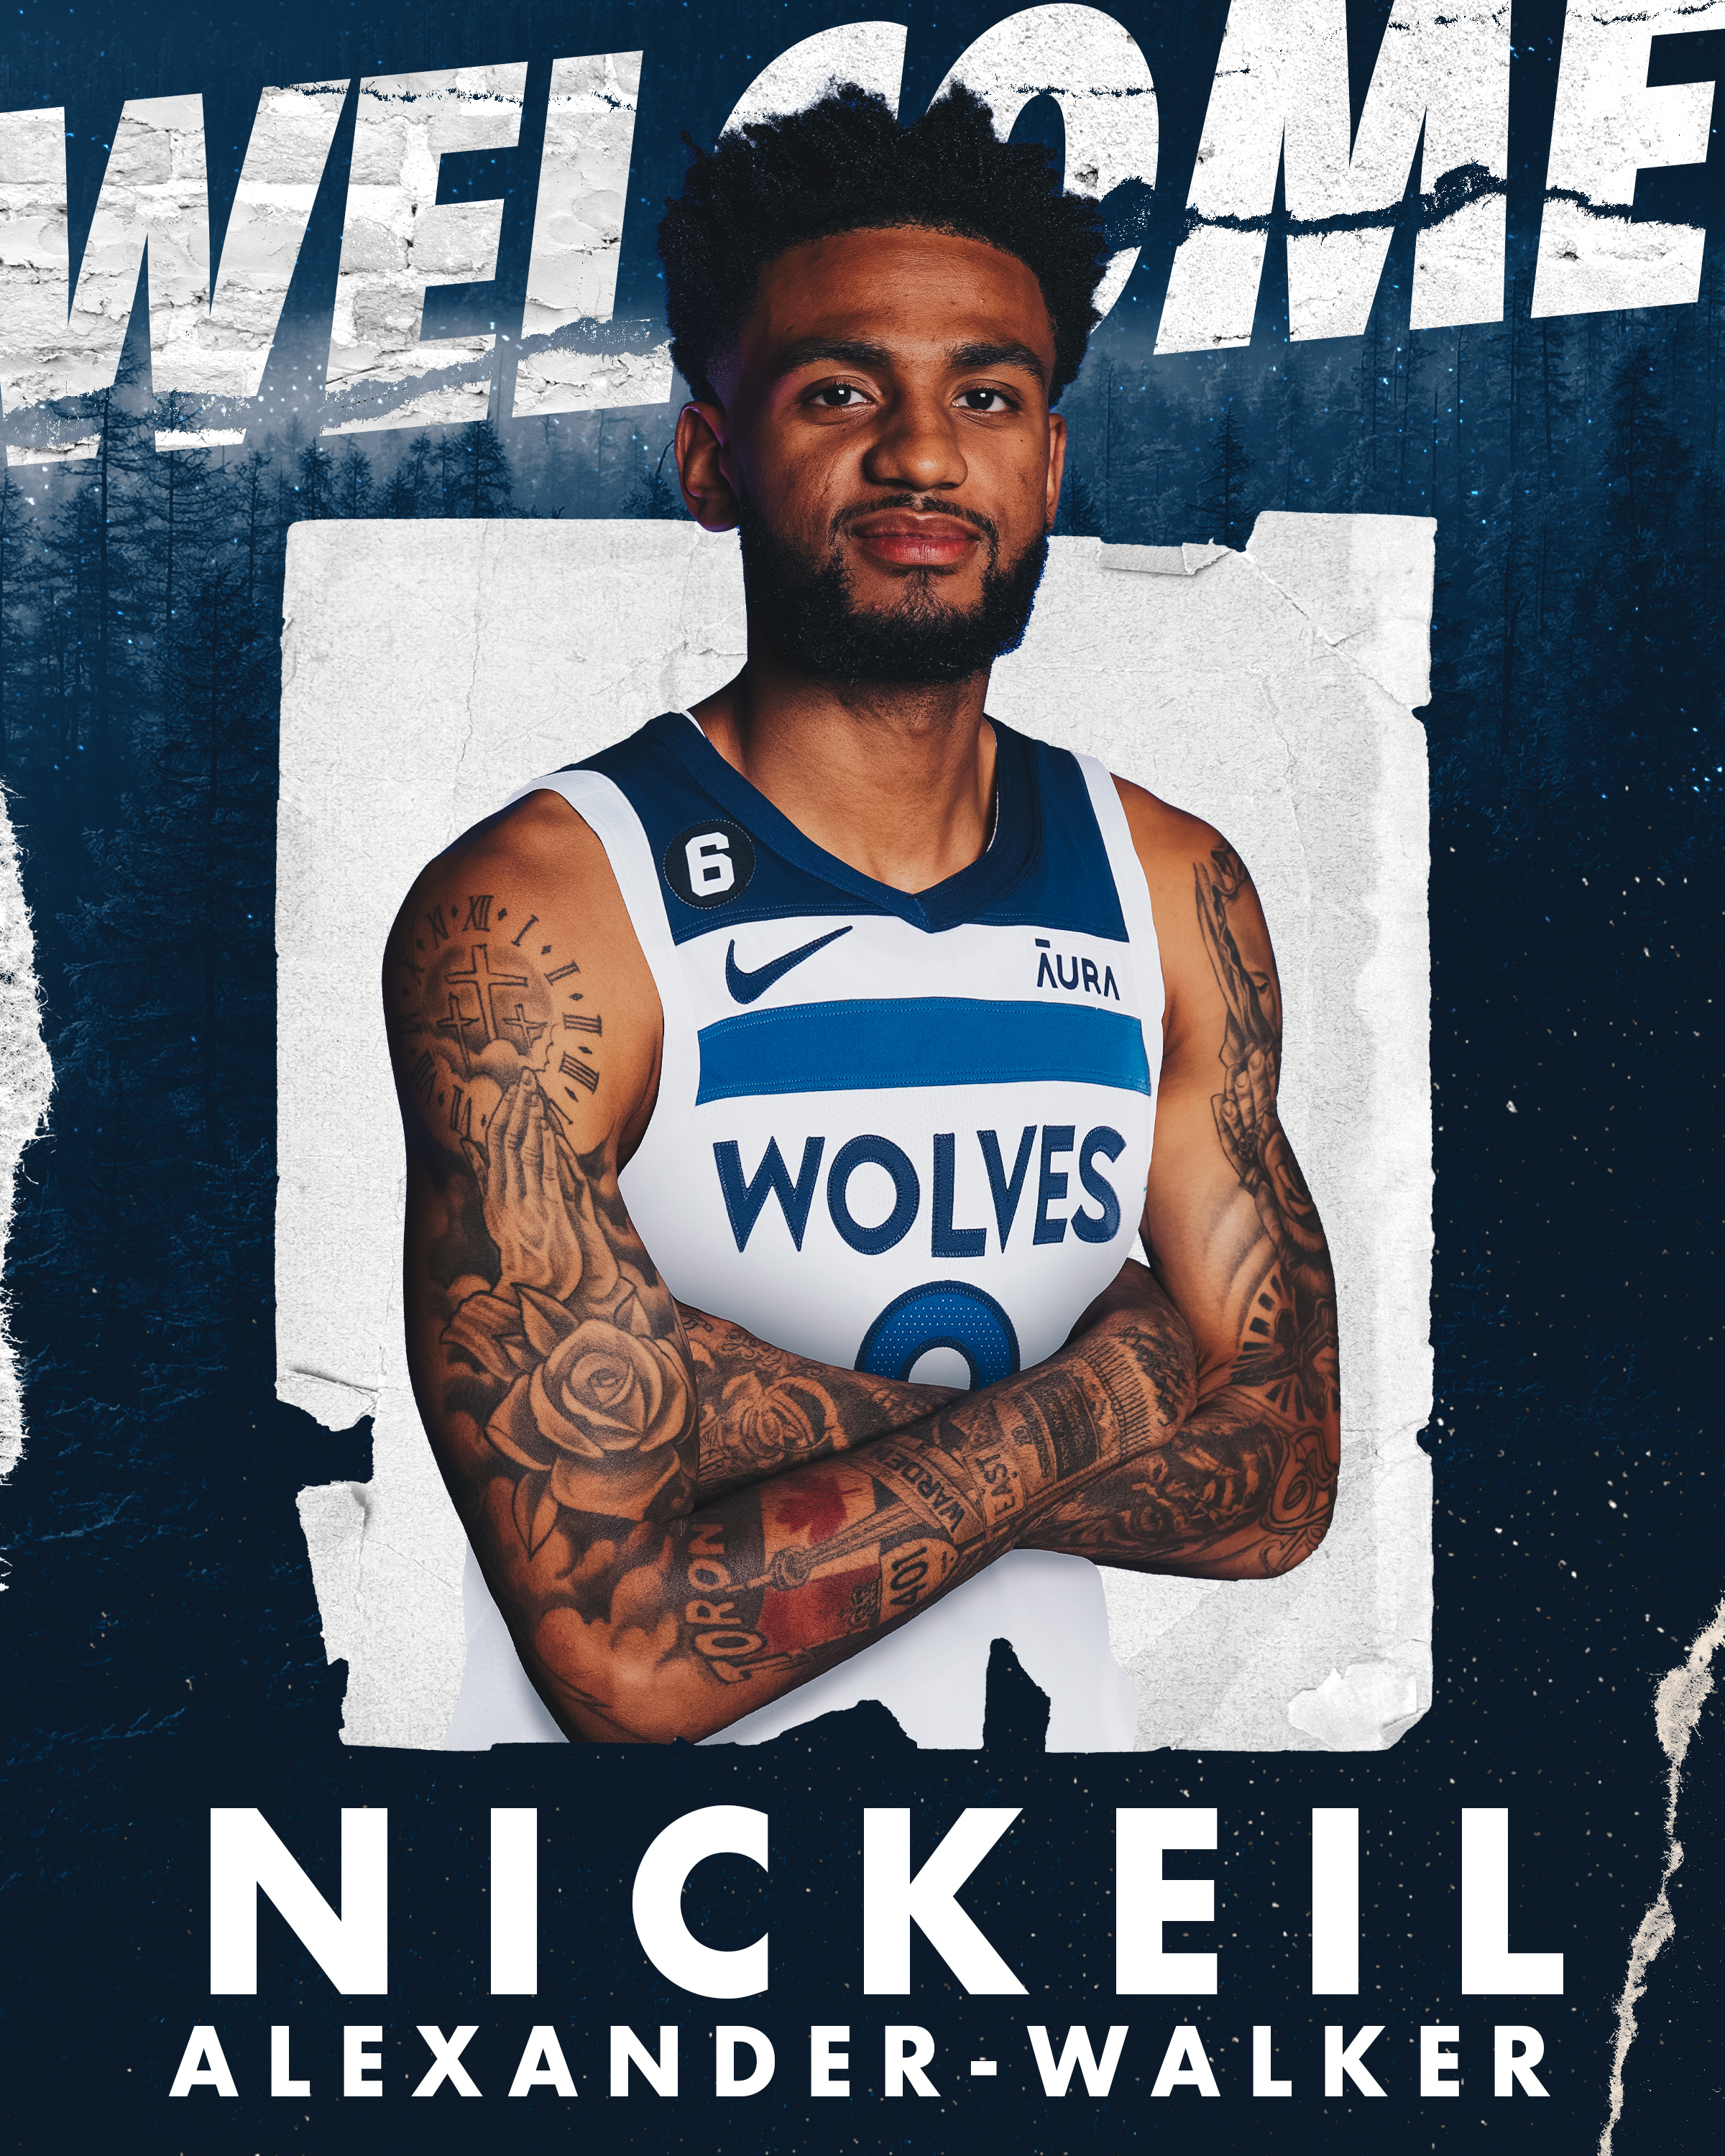 Nickeil Alexander-Walker 9 Minnesota Timberwolves basketball